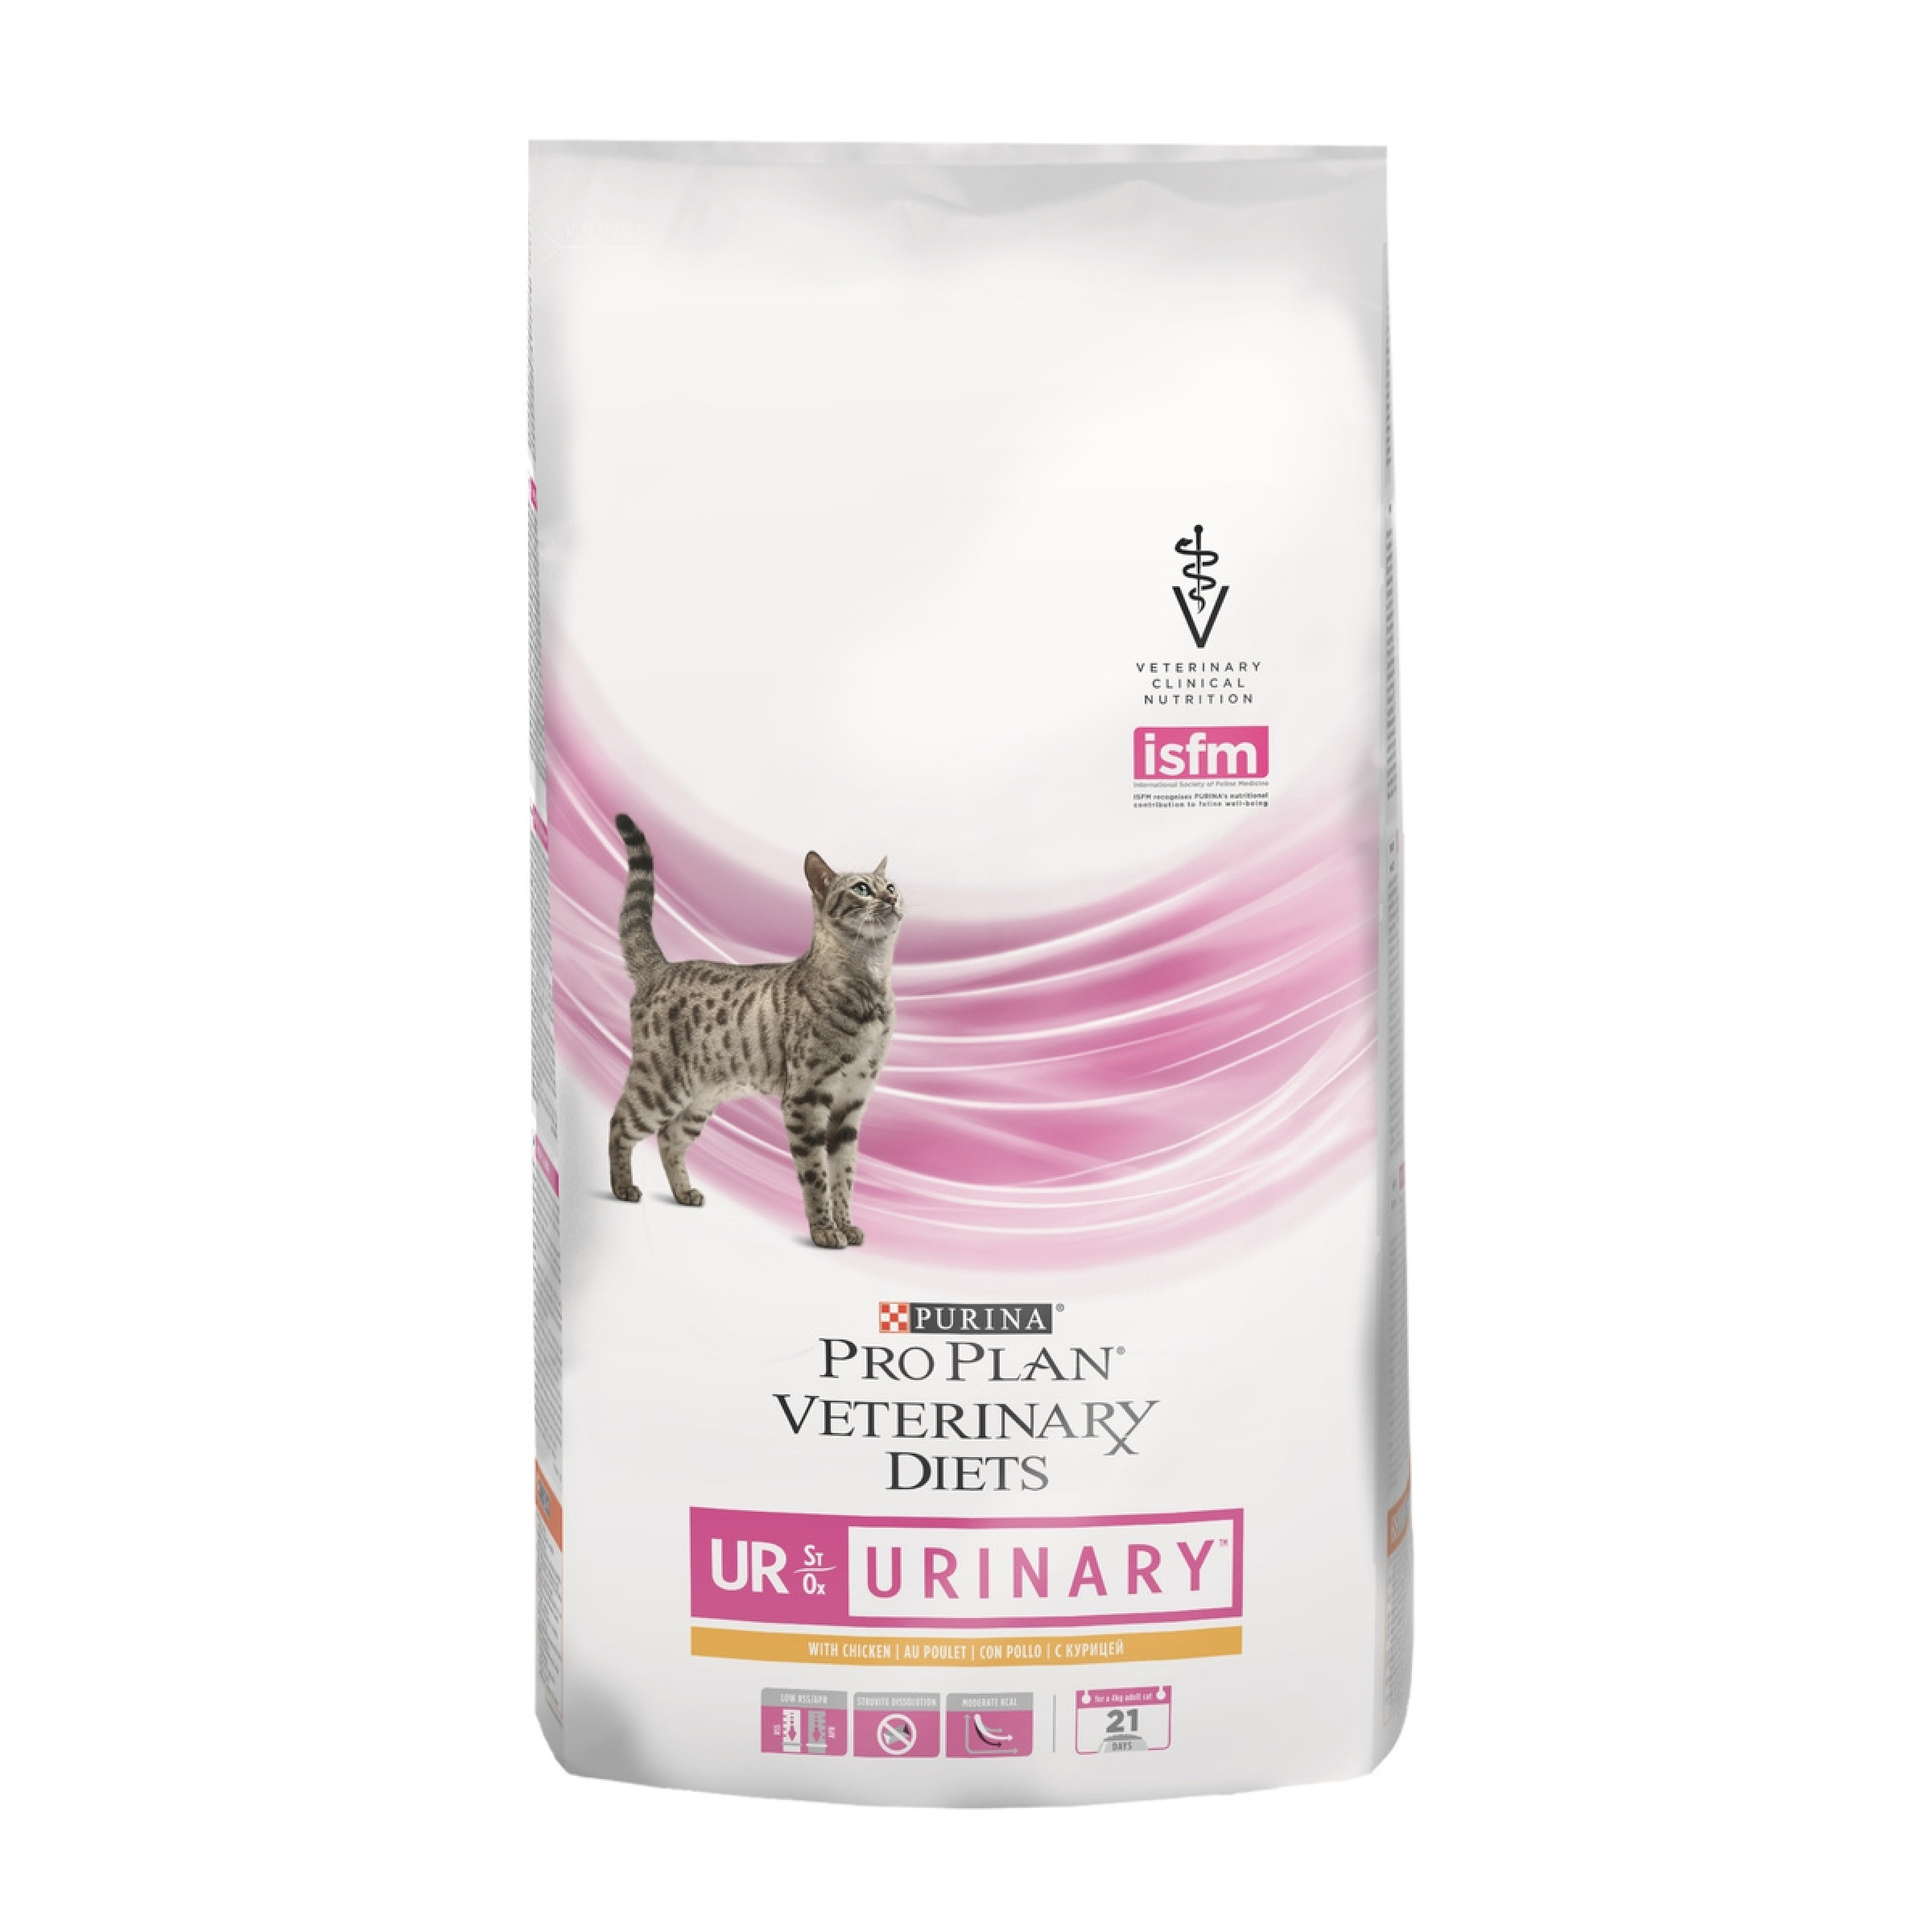 Сухой лечебный корм для кошек Pro Plan Veterinary diets UR Urinary c курицей, 5 кг